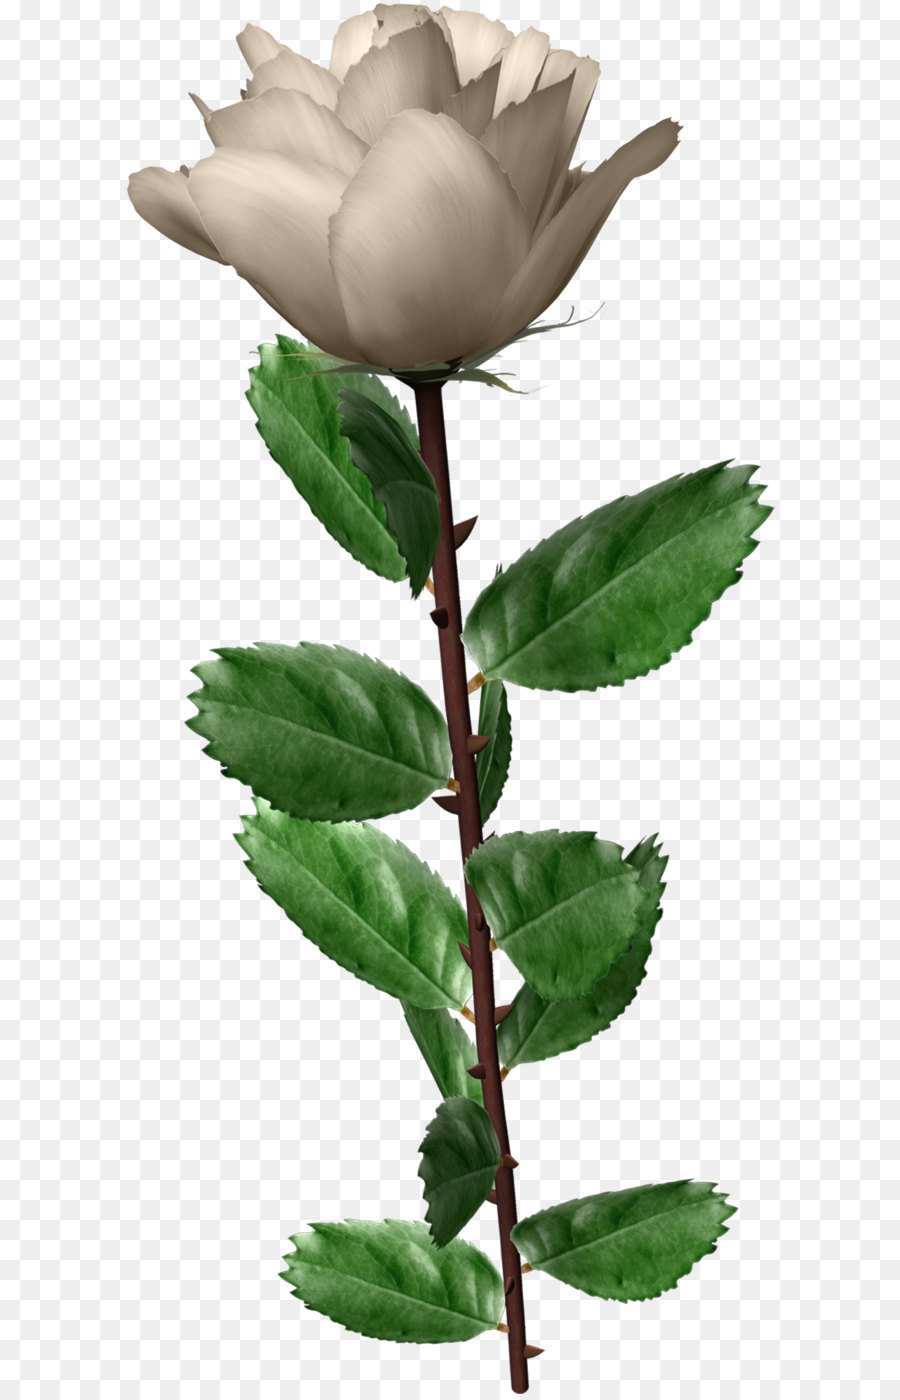 Garten Rosen, Centifolia Rosen Blume - Weiße rose PNG Bild, Blume, weiße rose PNG Bild